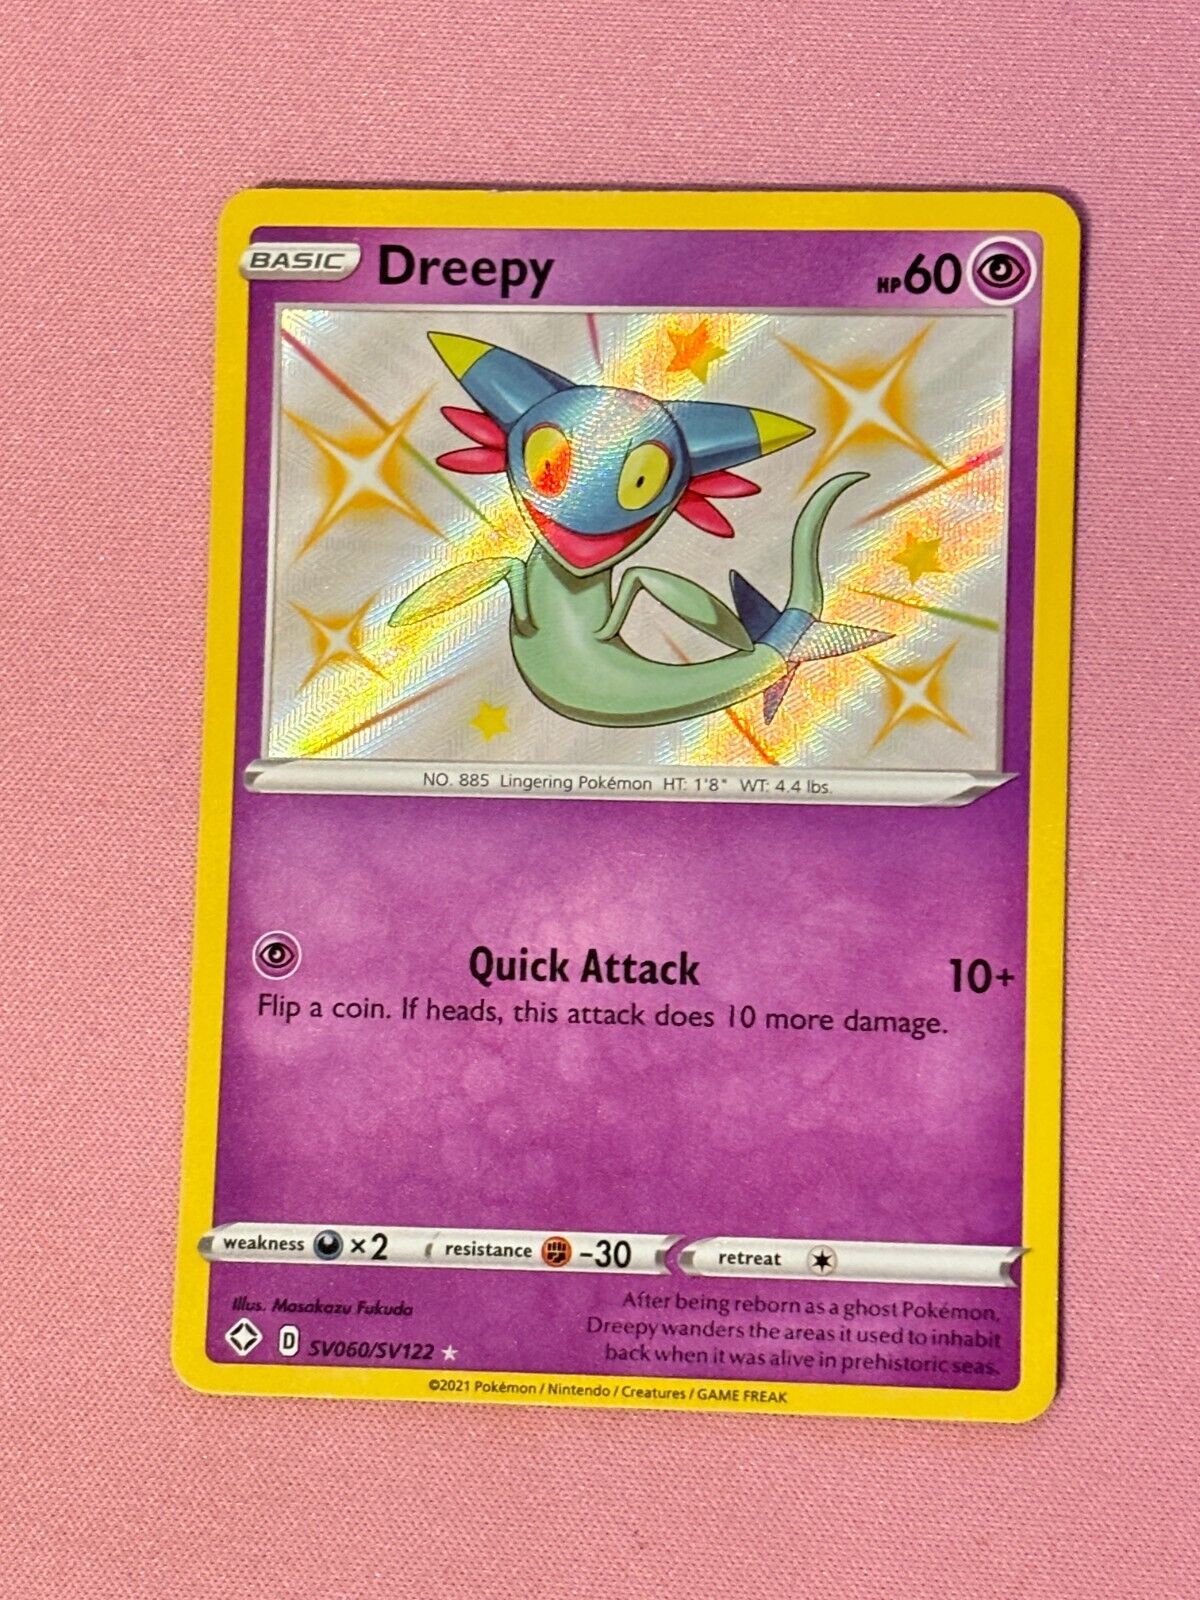 Pokemon TCG Dreepy SV060/SV122 Shining Fates Baby Shiny Rare Card